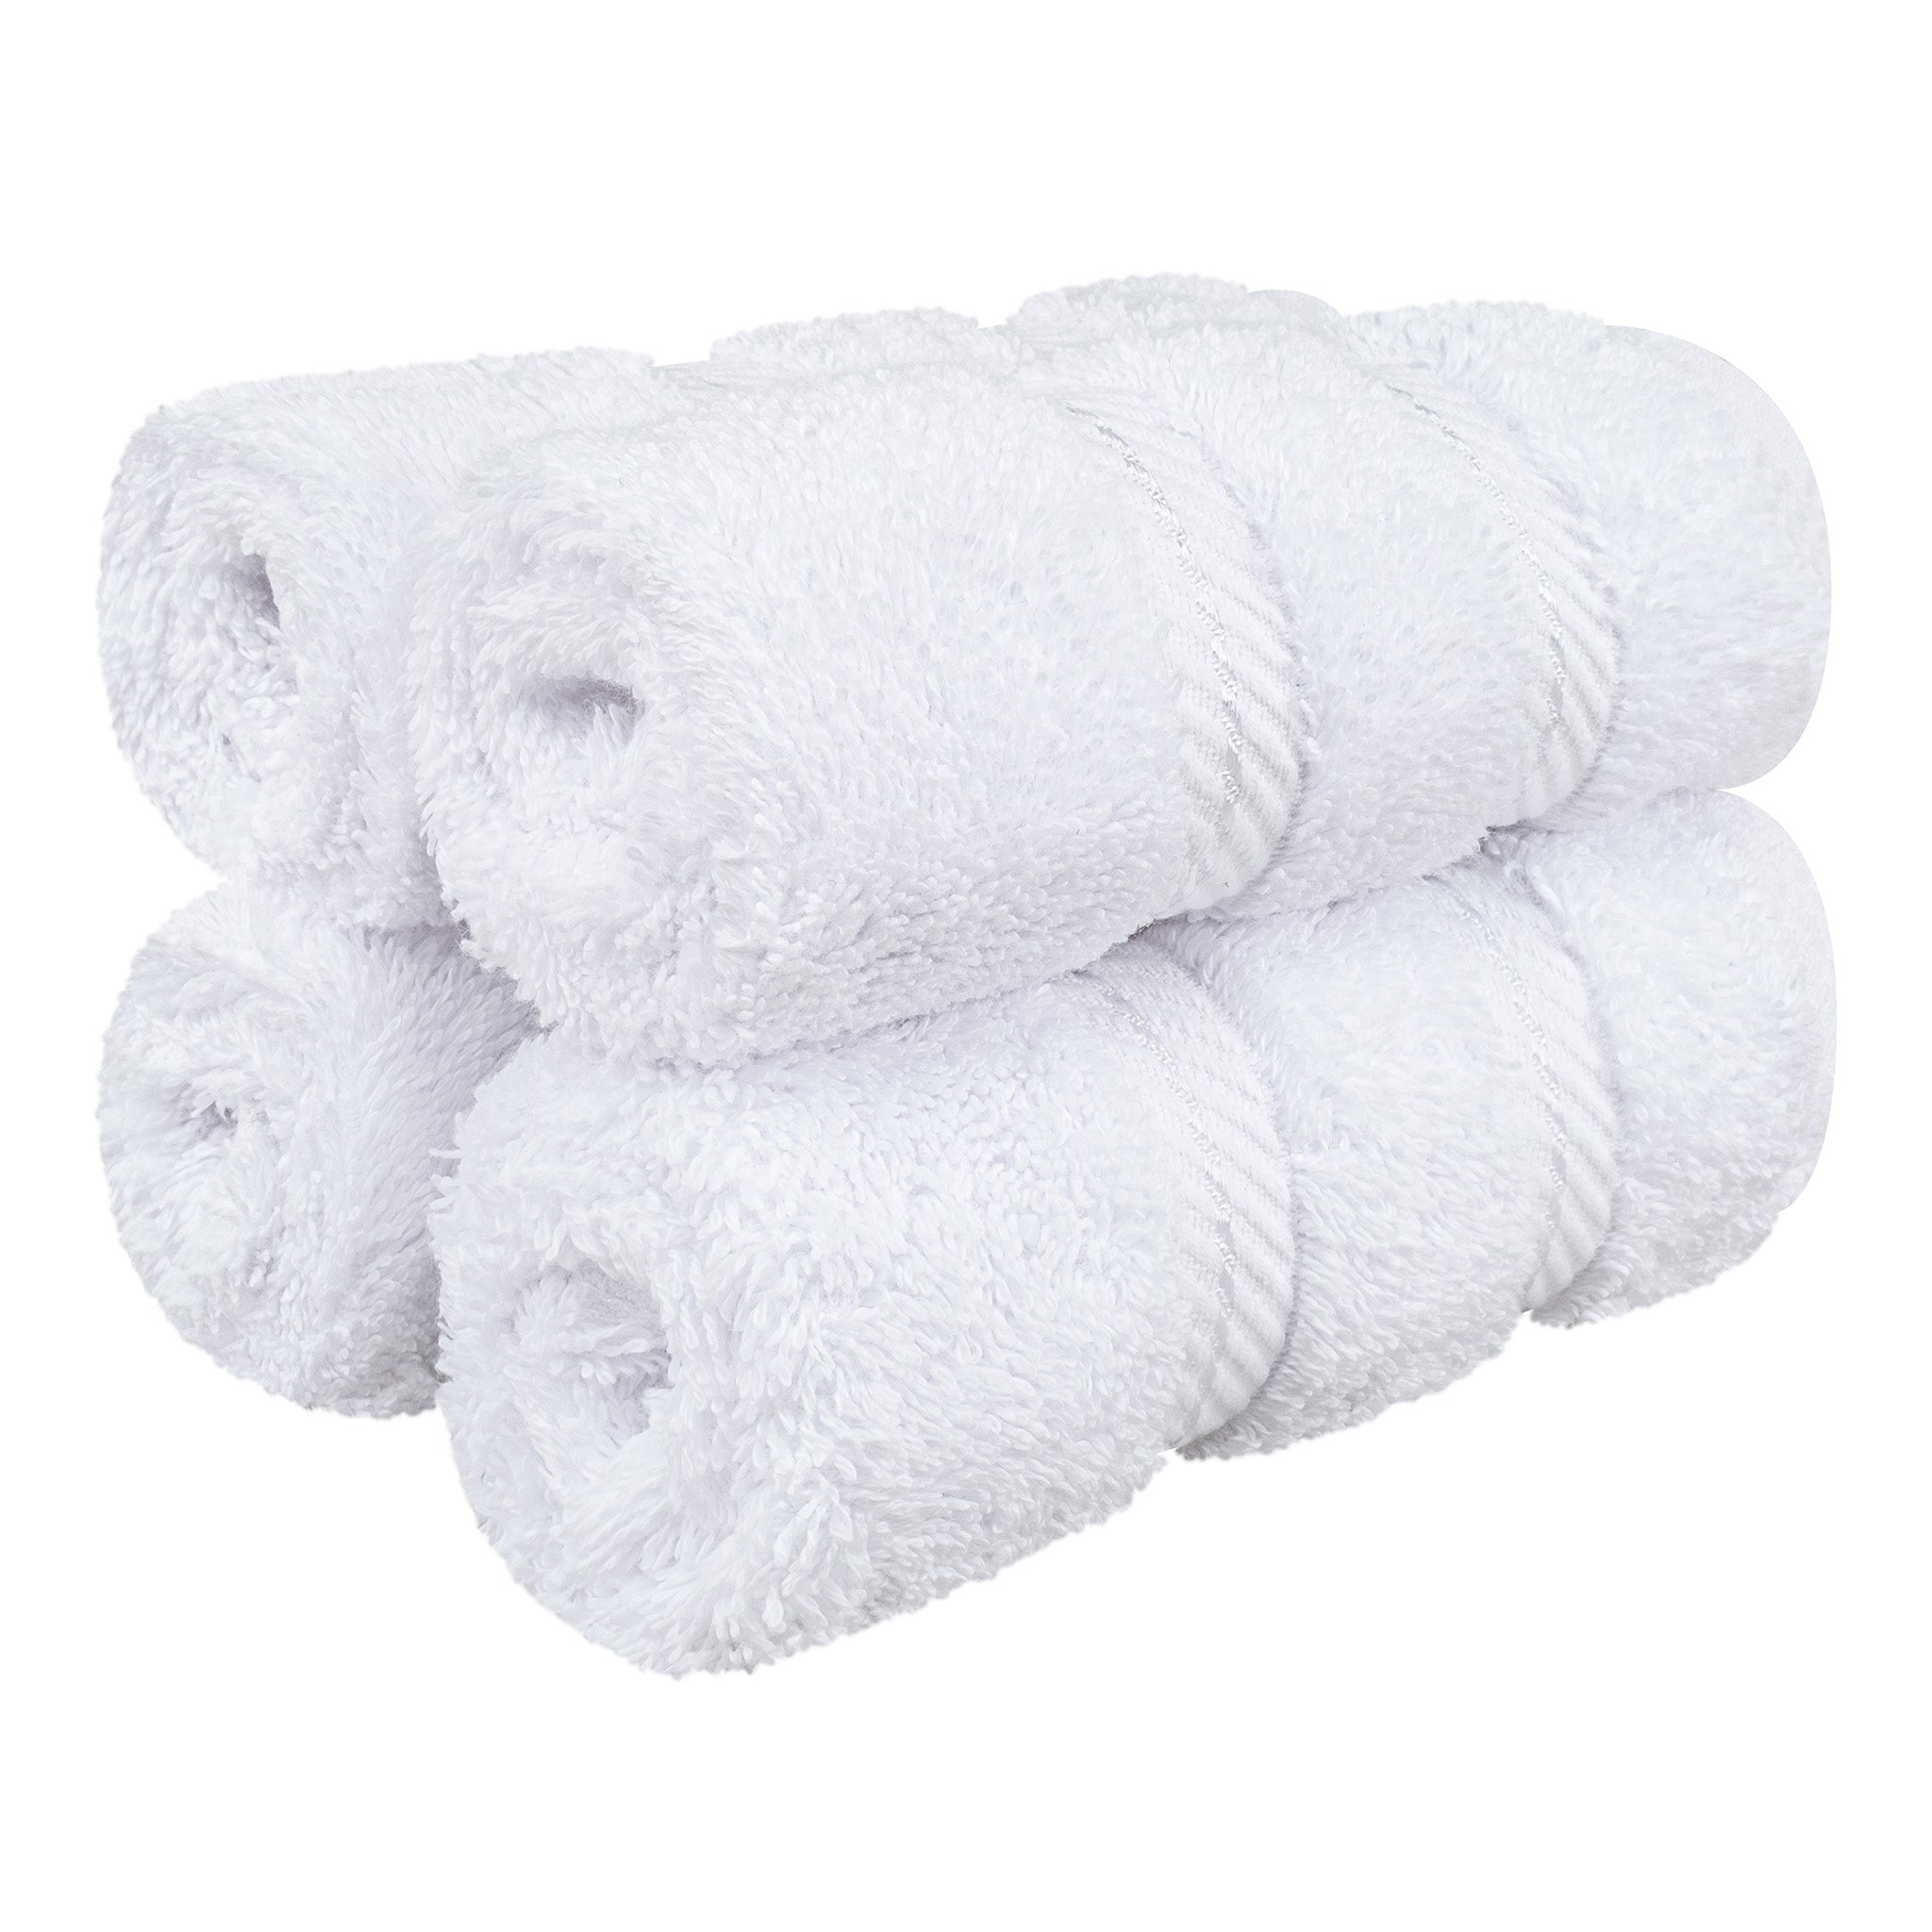 4 Piece 100% Turkish Cotton Best Washcloth Towel Set